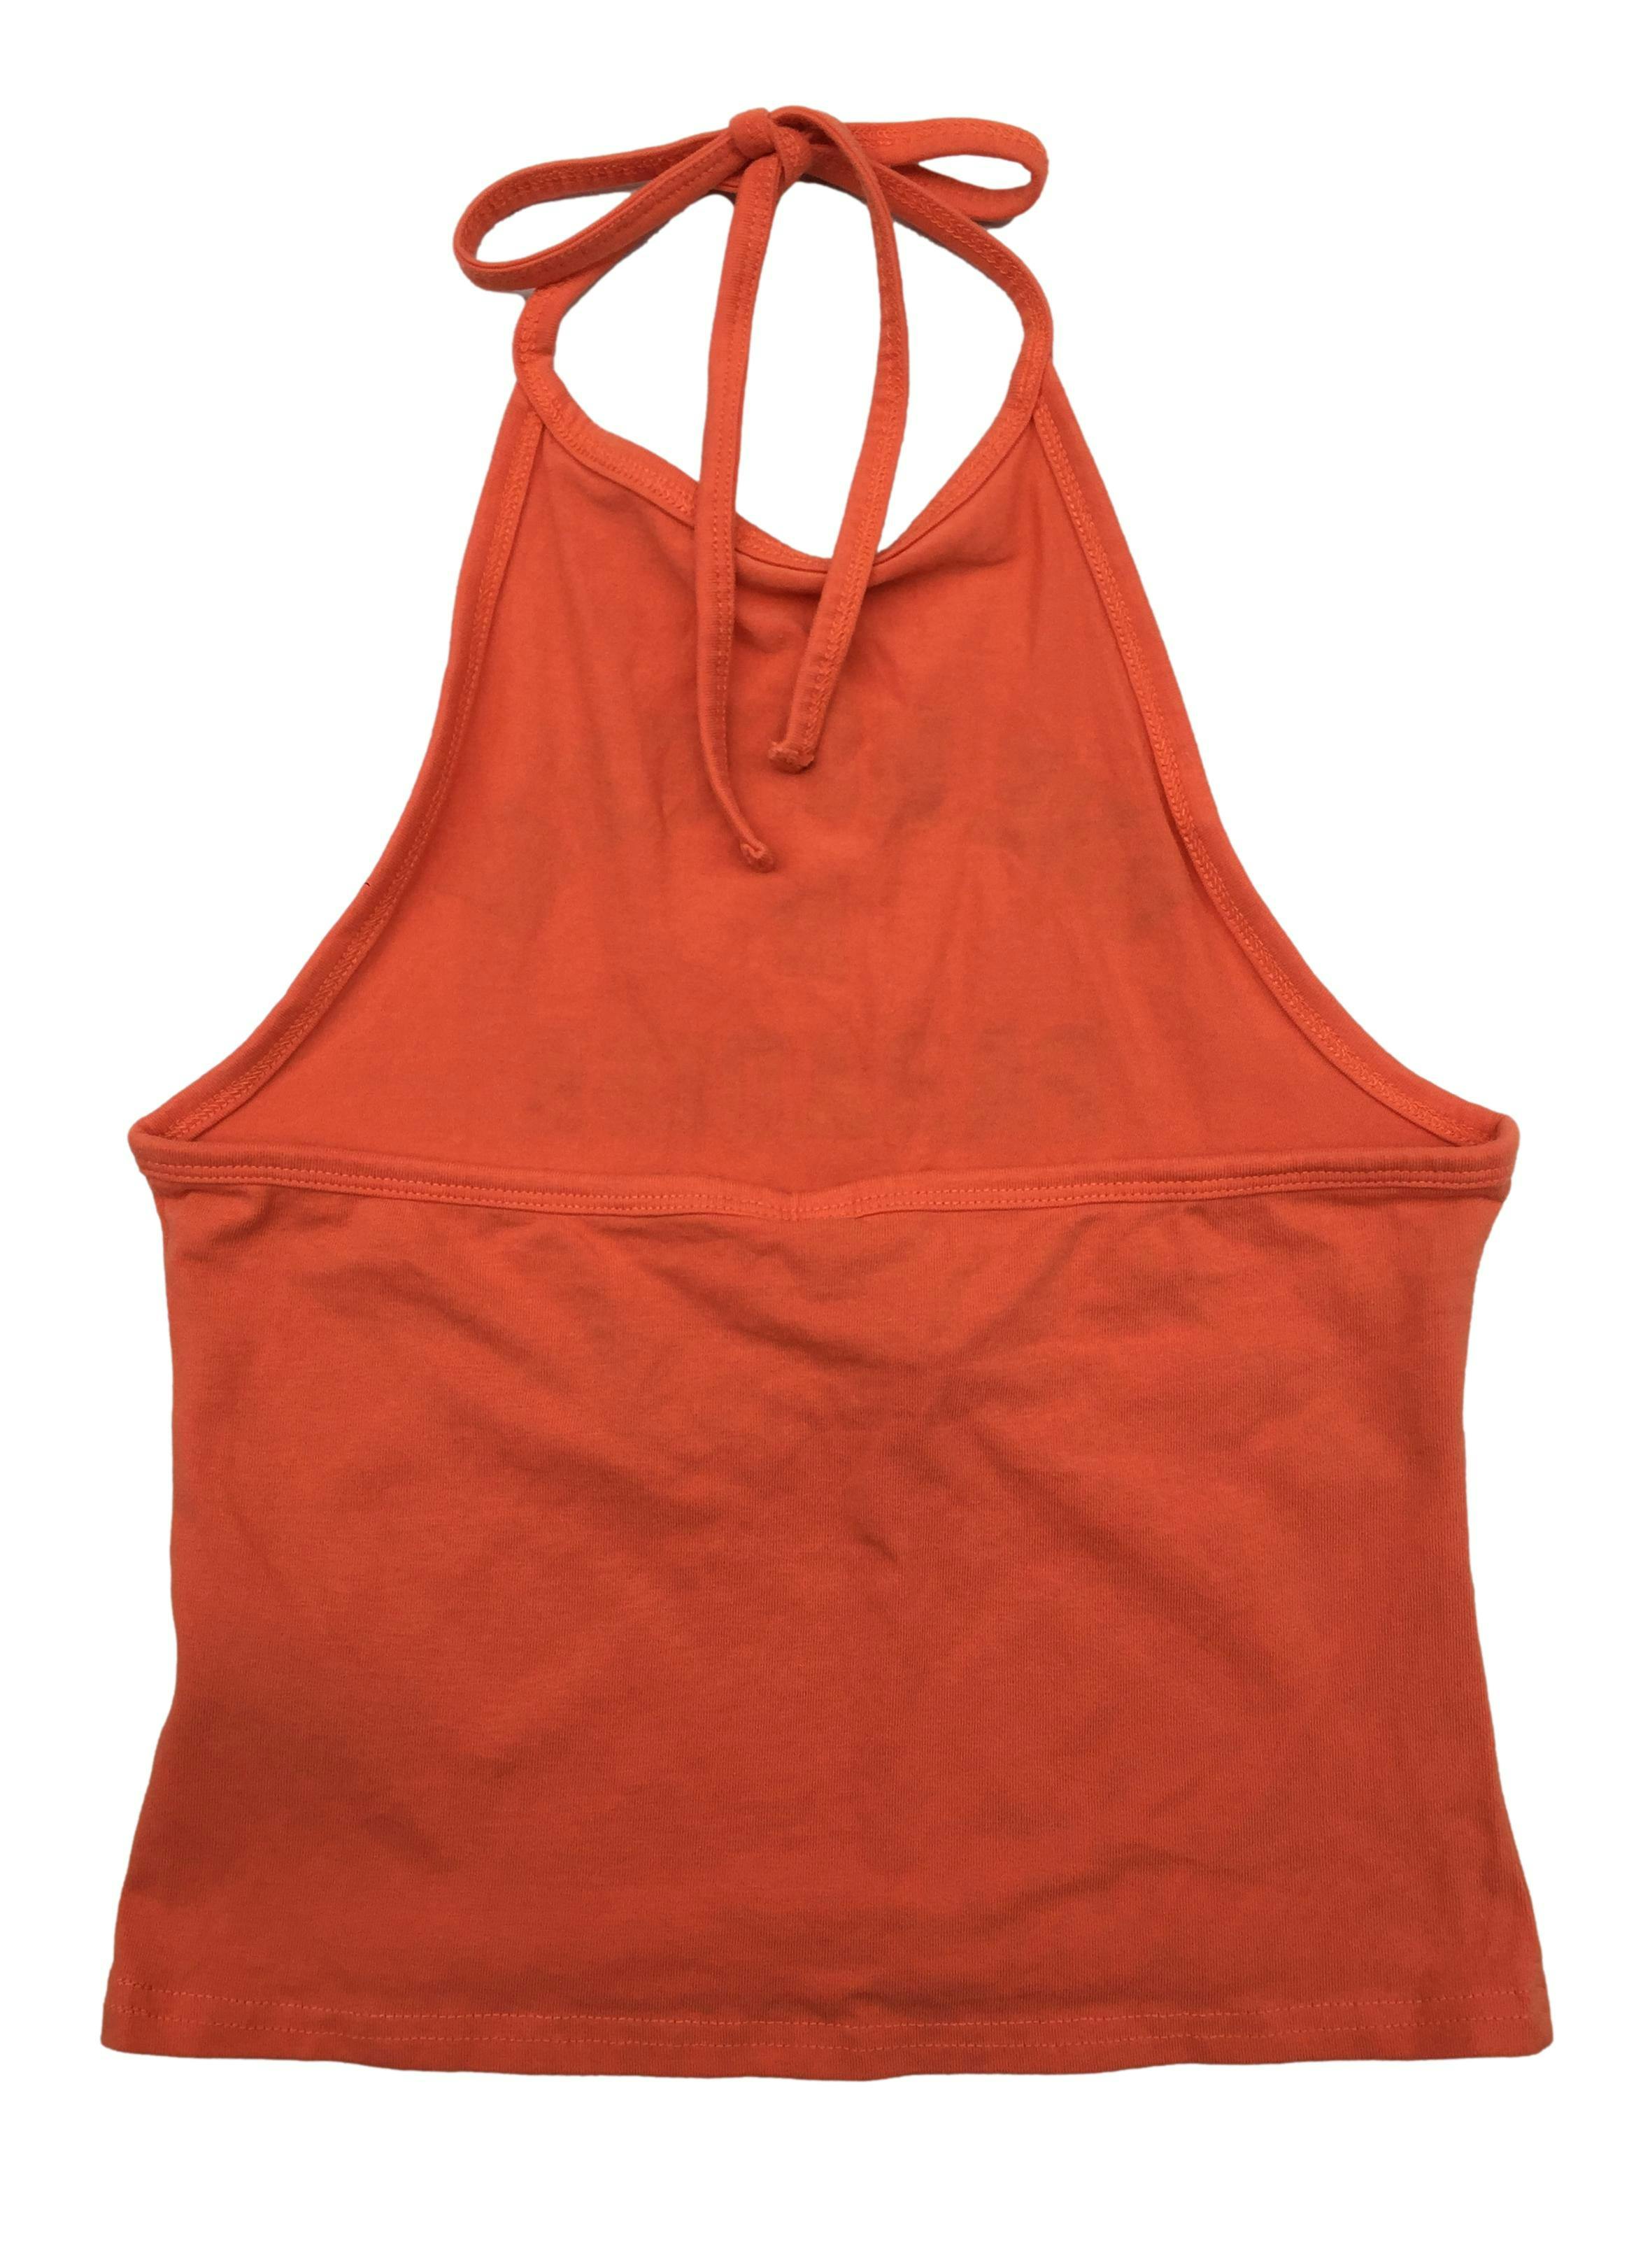 Top H&M anaranjado cuello halter, de algodón stretch. Busto 70cm Largo 40cm